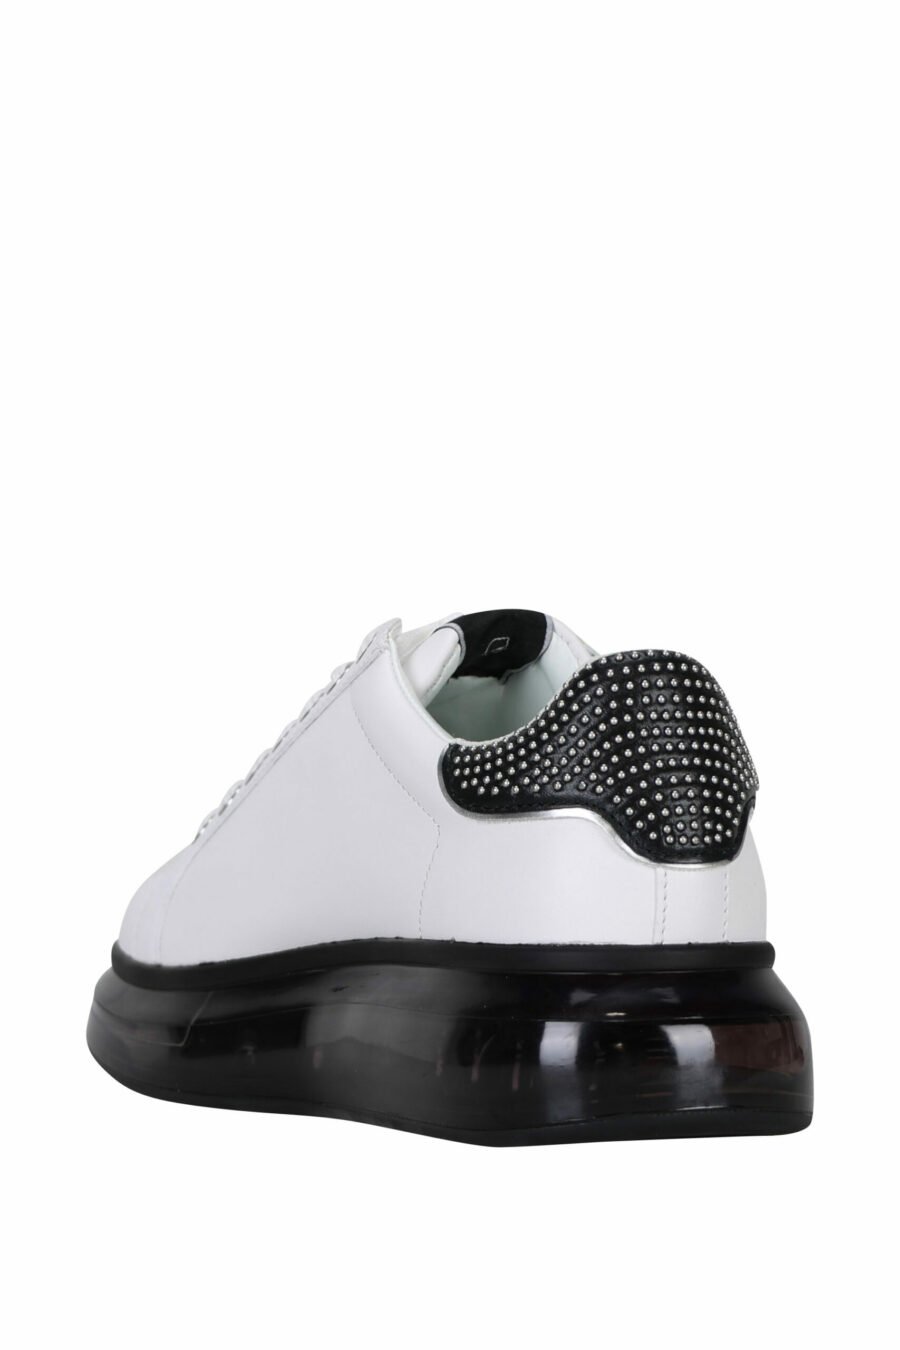 Zapatillas blancas "kapri fushion" con suela negra y logo en contorno - 5059529363467 3 scaled